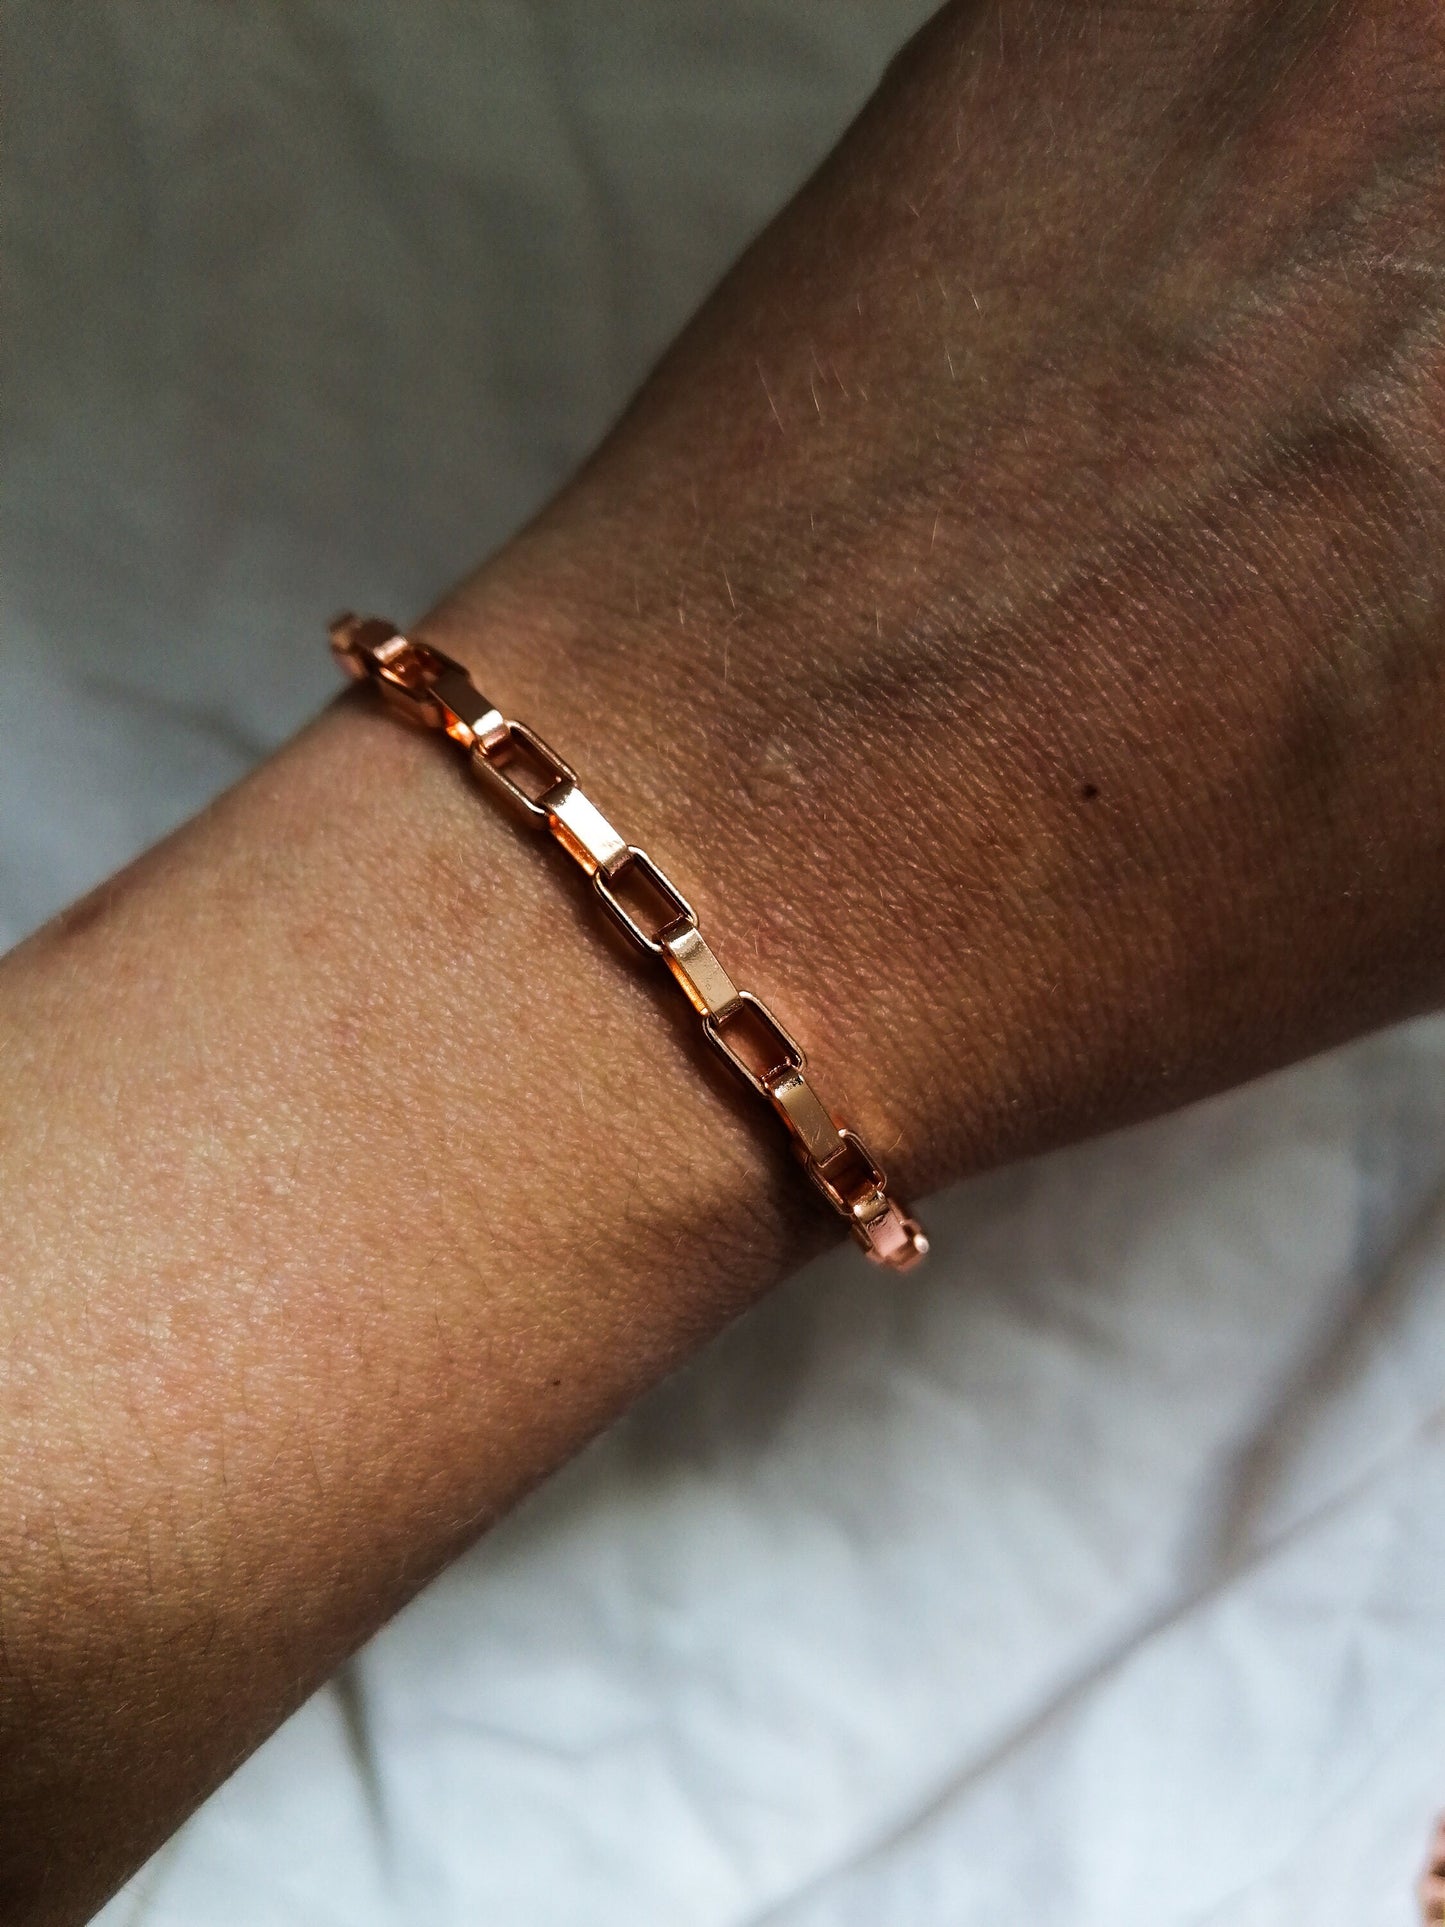 Rose gold chain bracelet